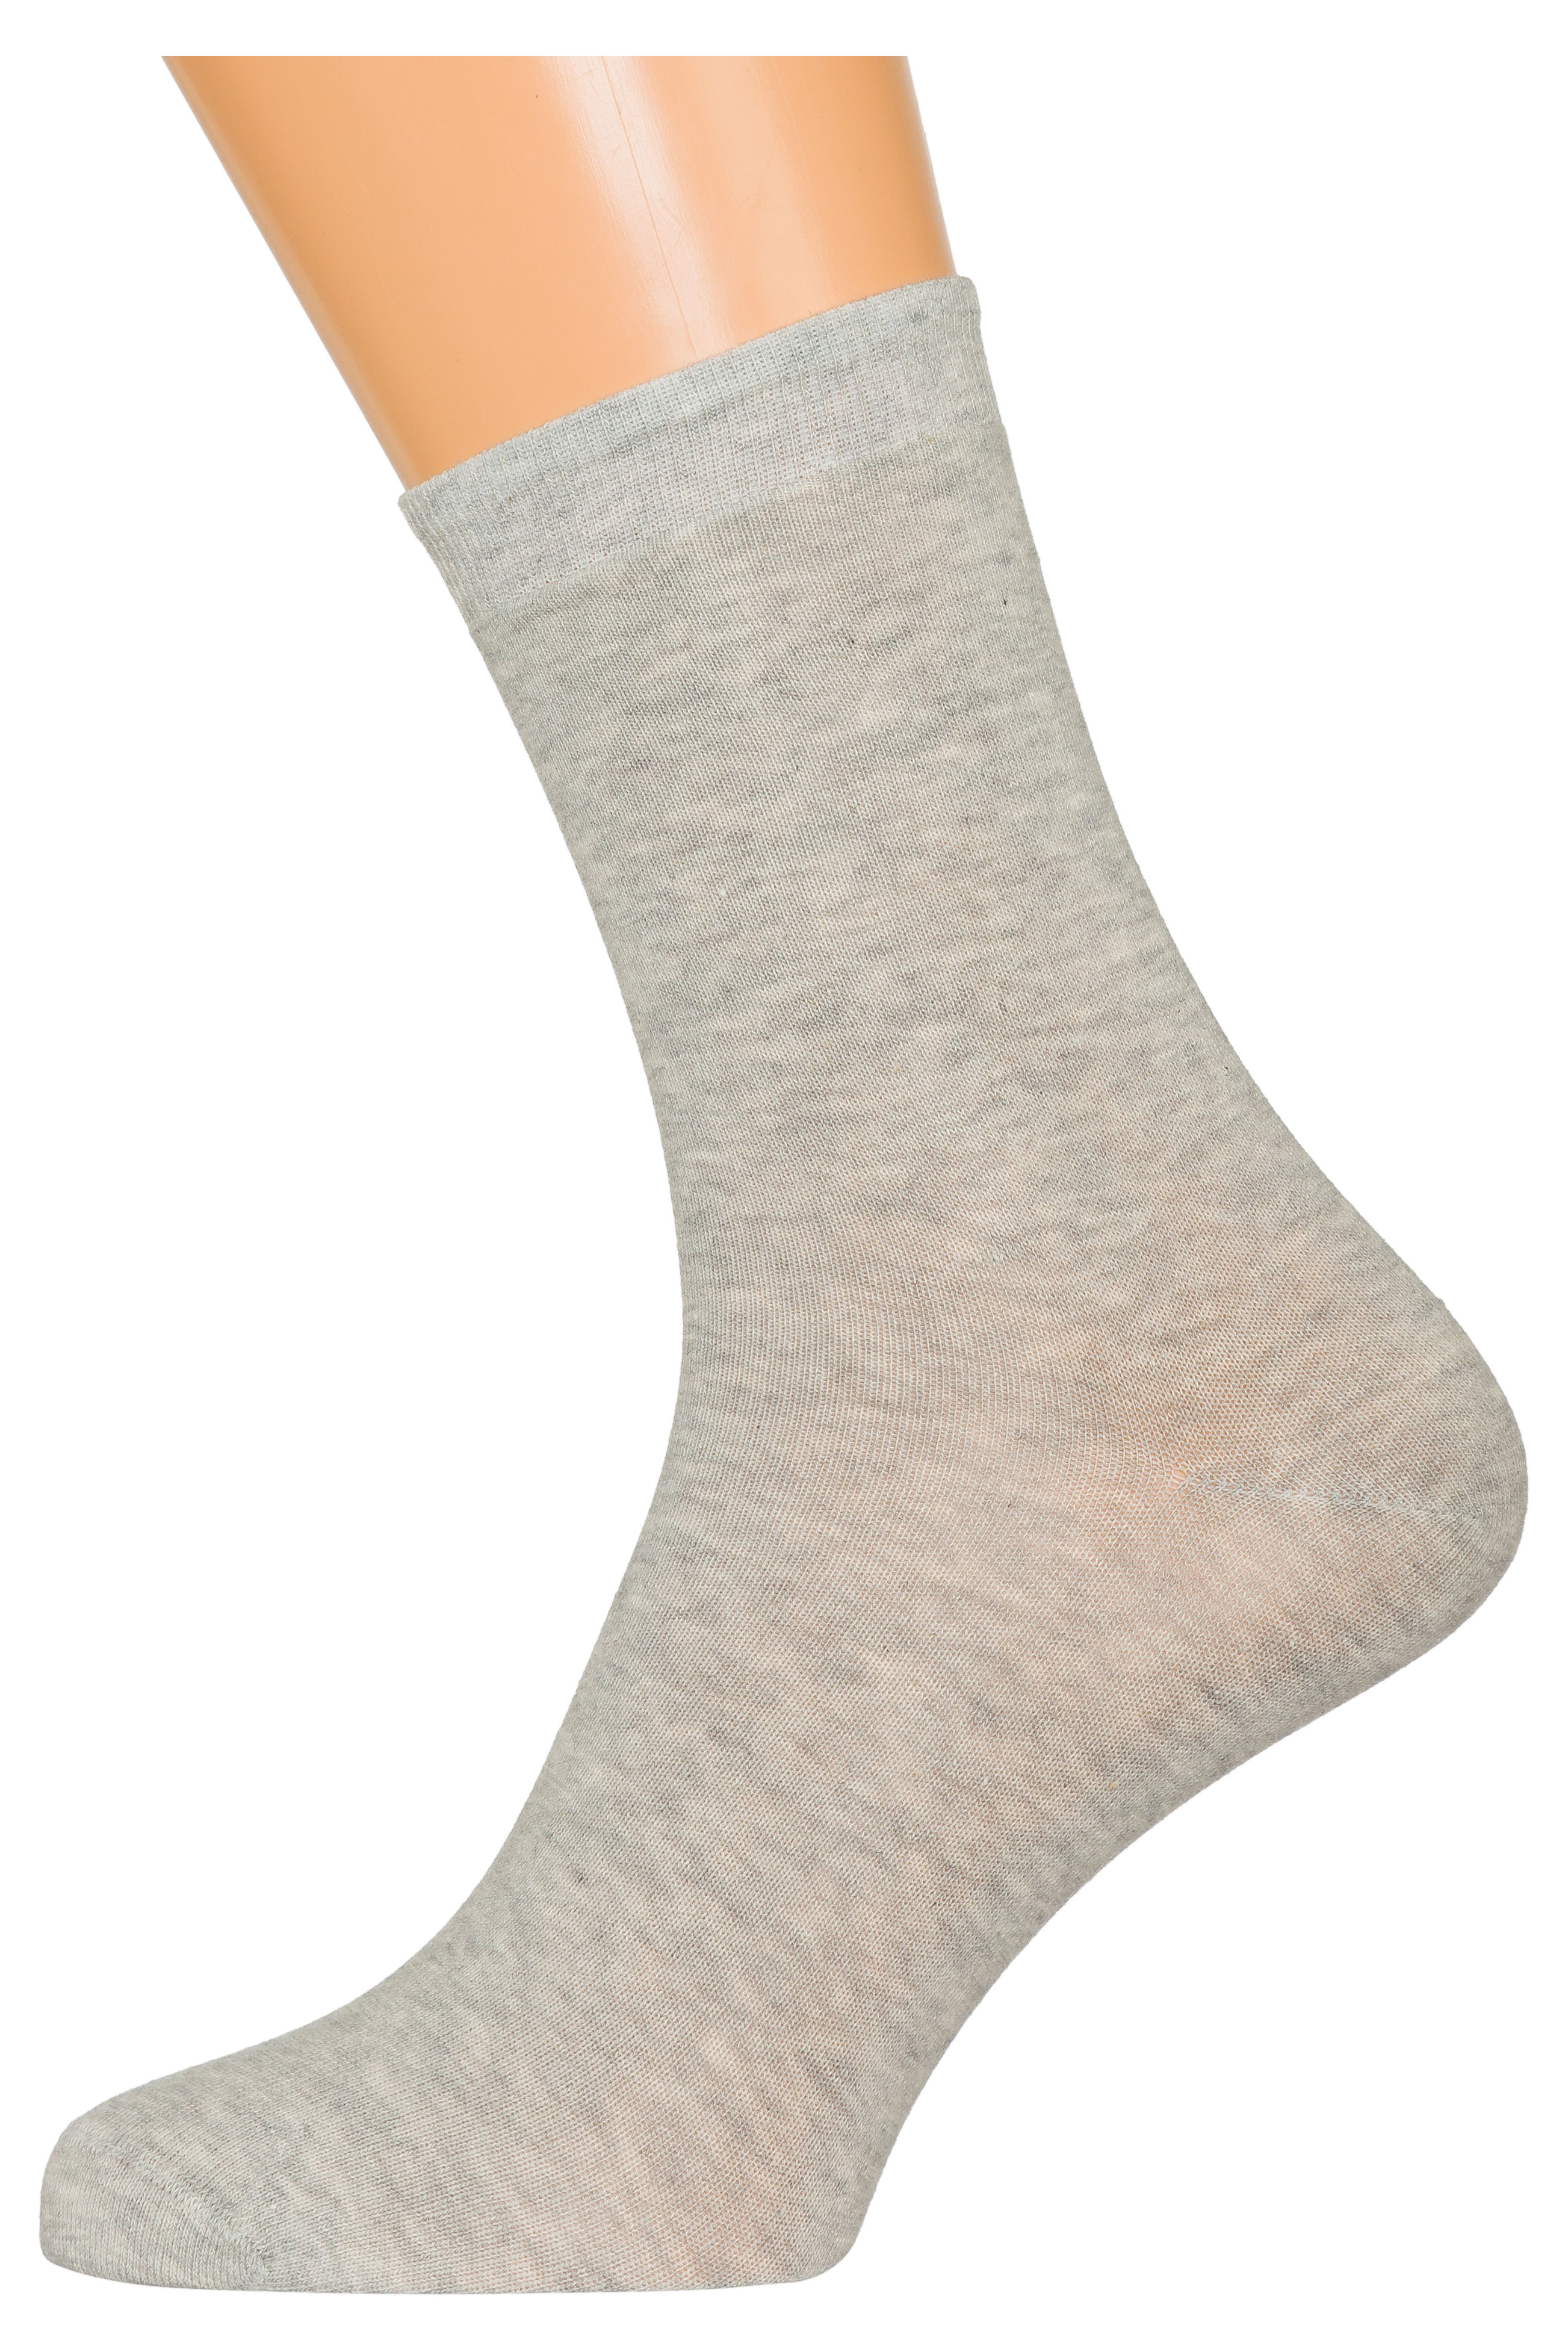 Носки мужские «ХОХ» Х-3R15 светло-серые, размер 27